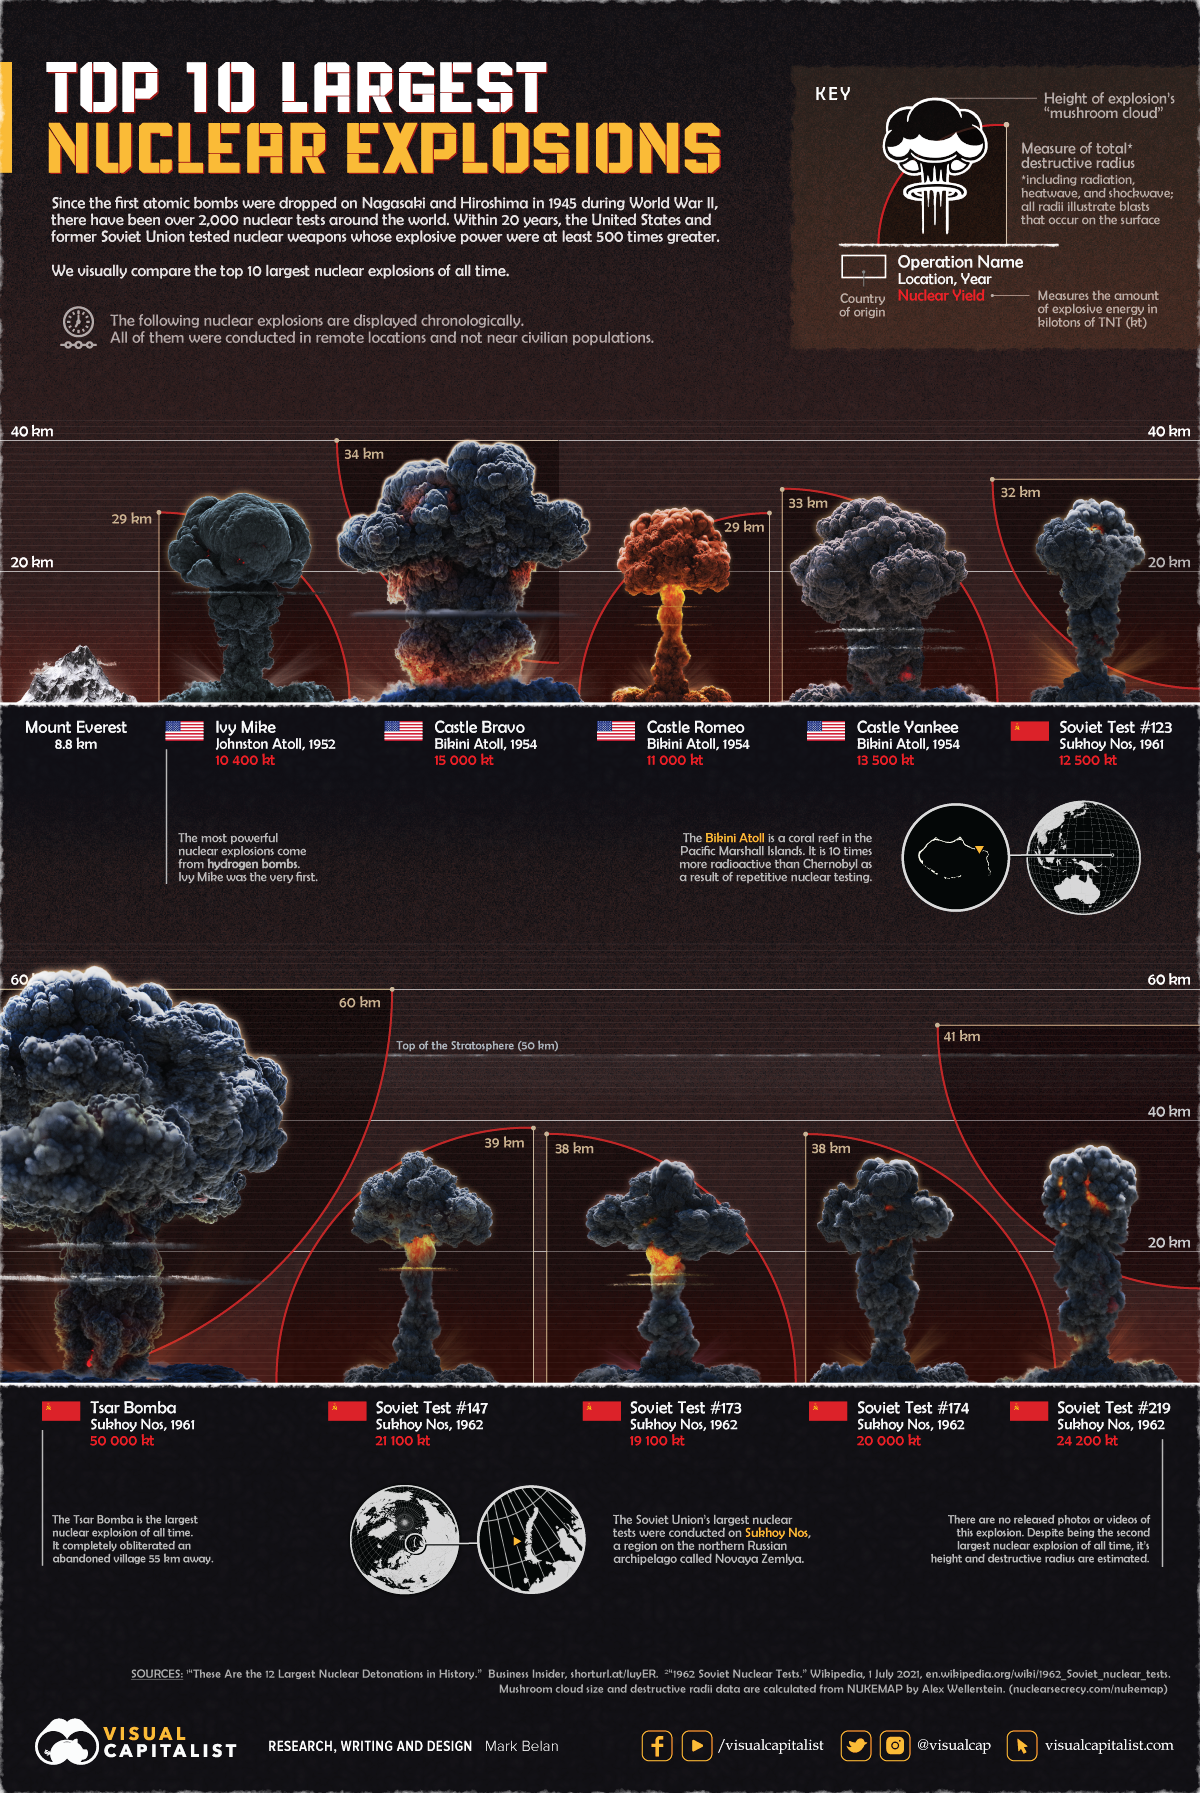 инфографика, сравнивающая 10 крупнейших ядерных взрывов